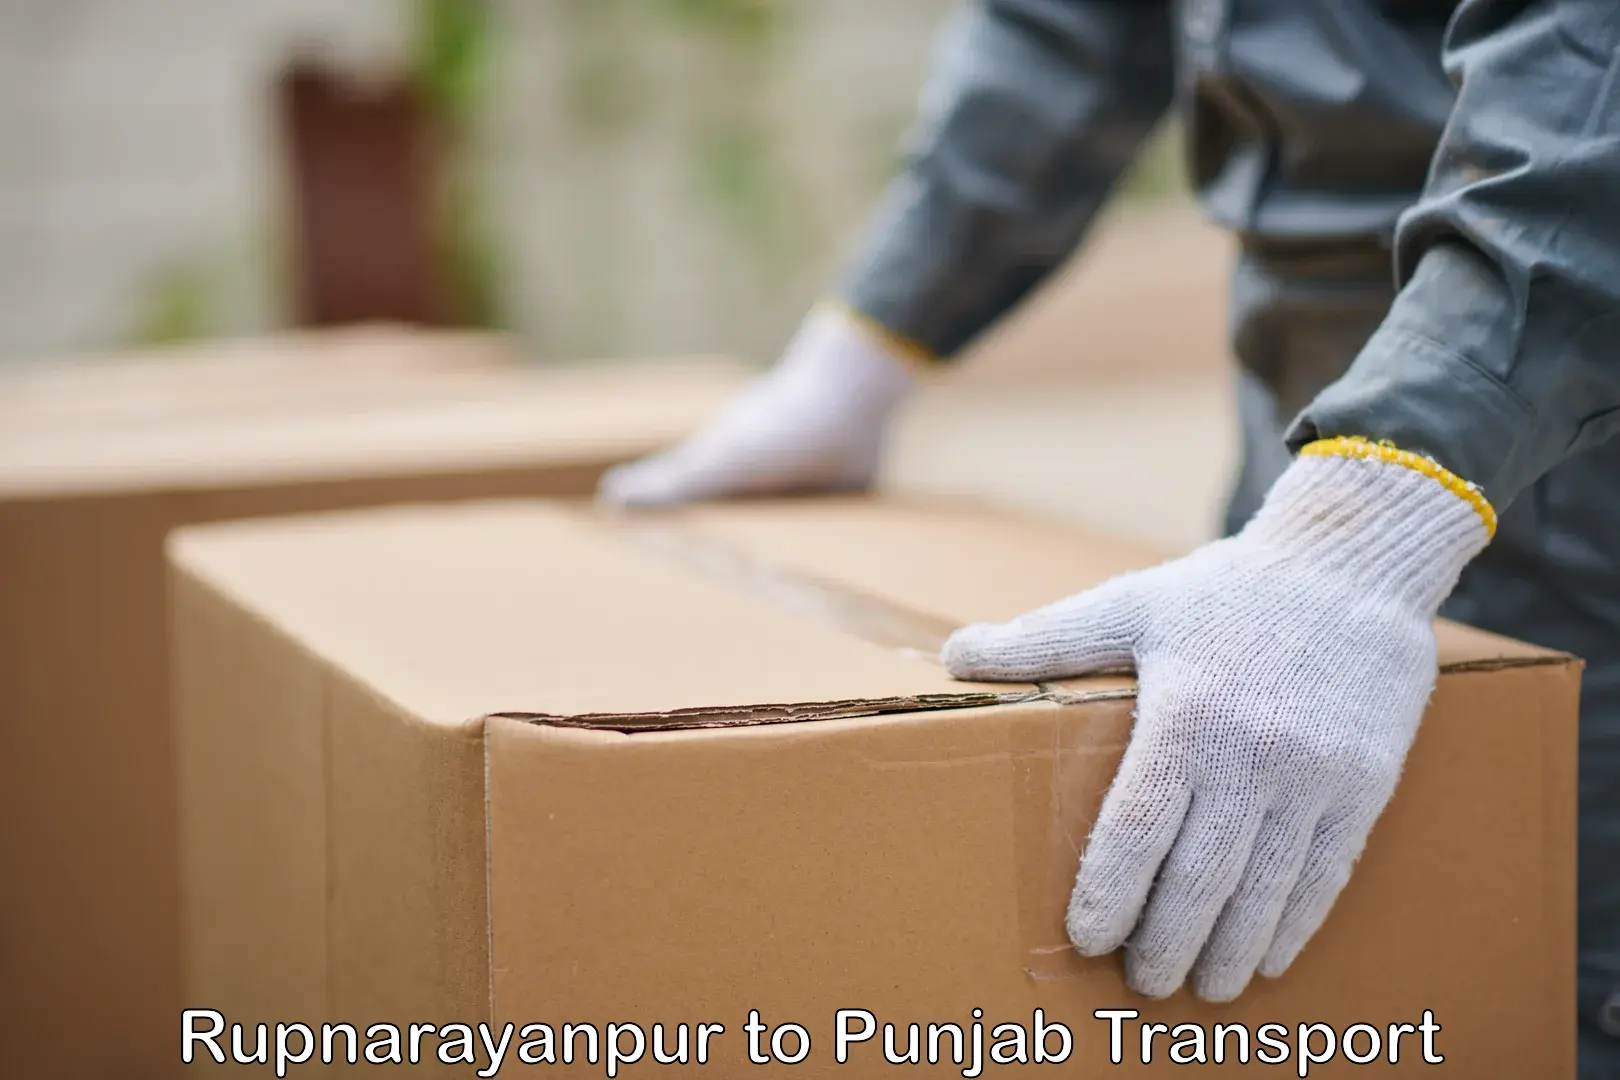 Air freight transport services Rupnarayanpur to Dinanagar